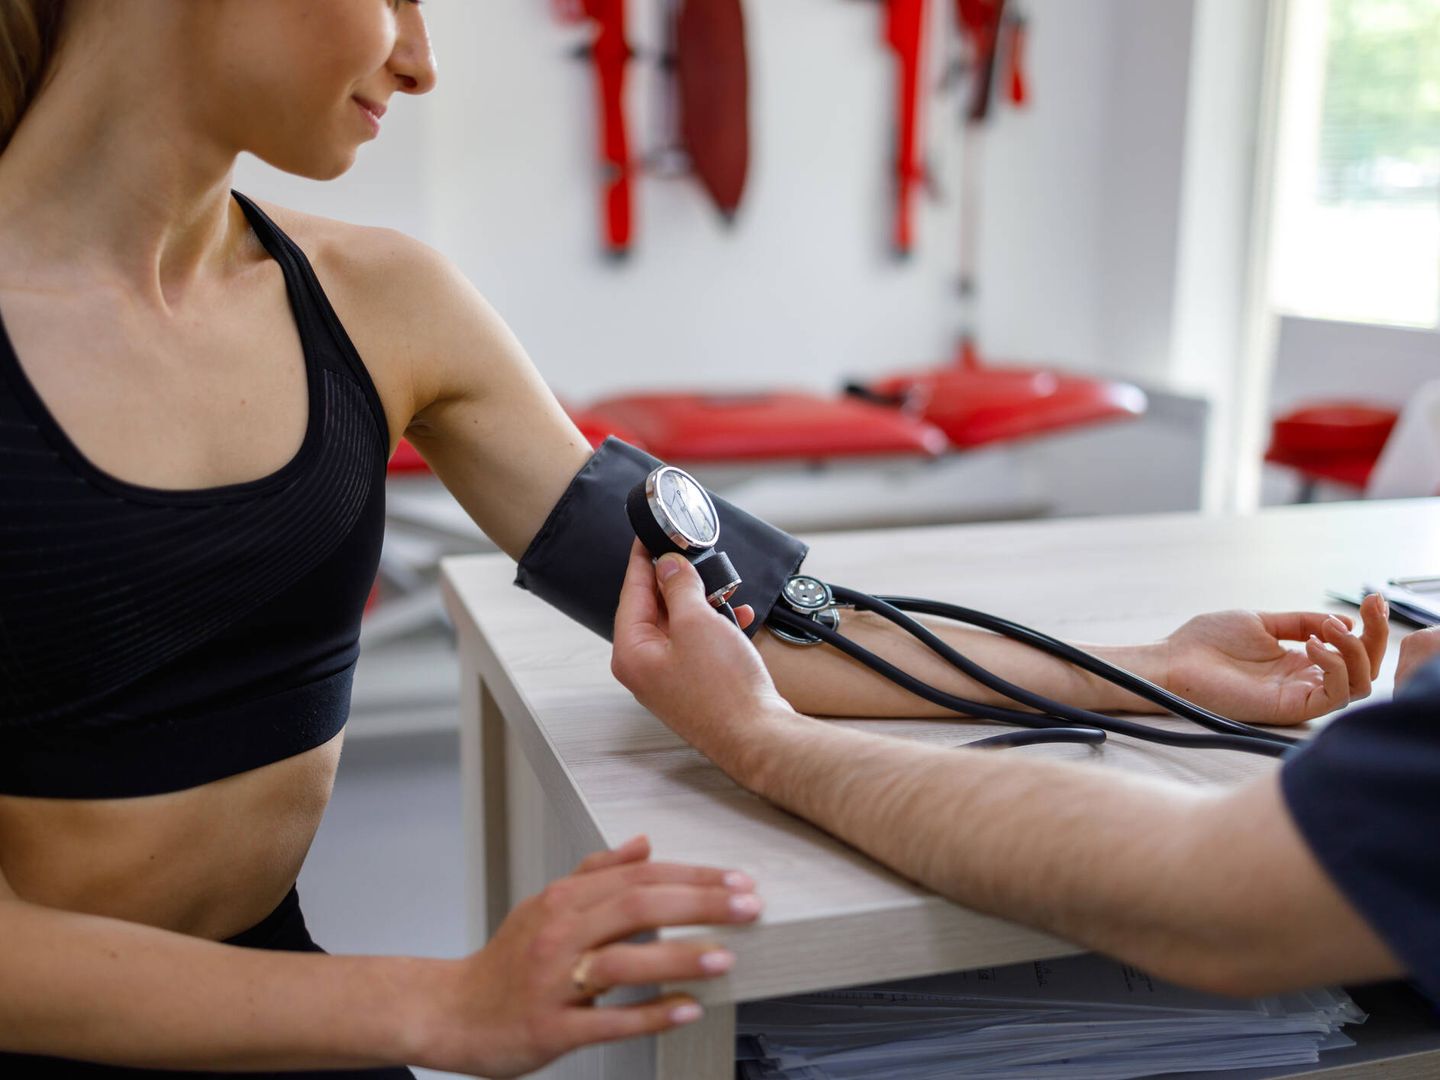 Uno de los beneficios de correr con regularidad es que ayuda a controlar la tensión arterial. (iStock)